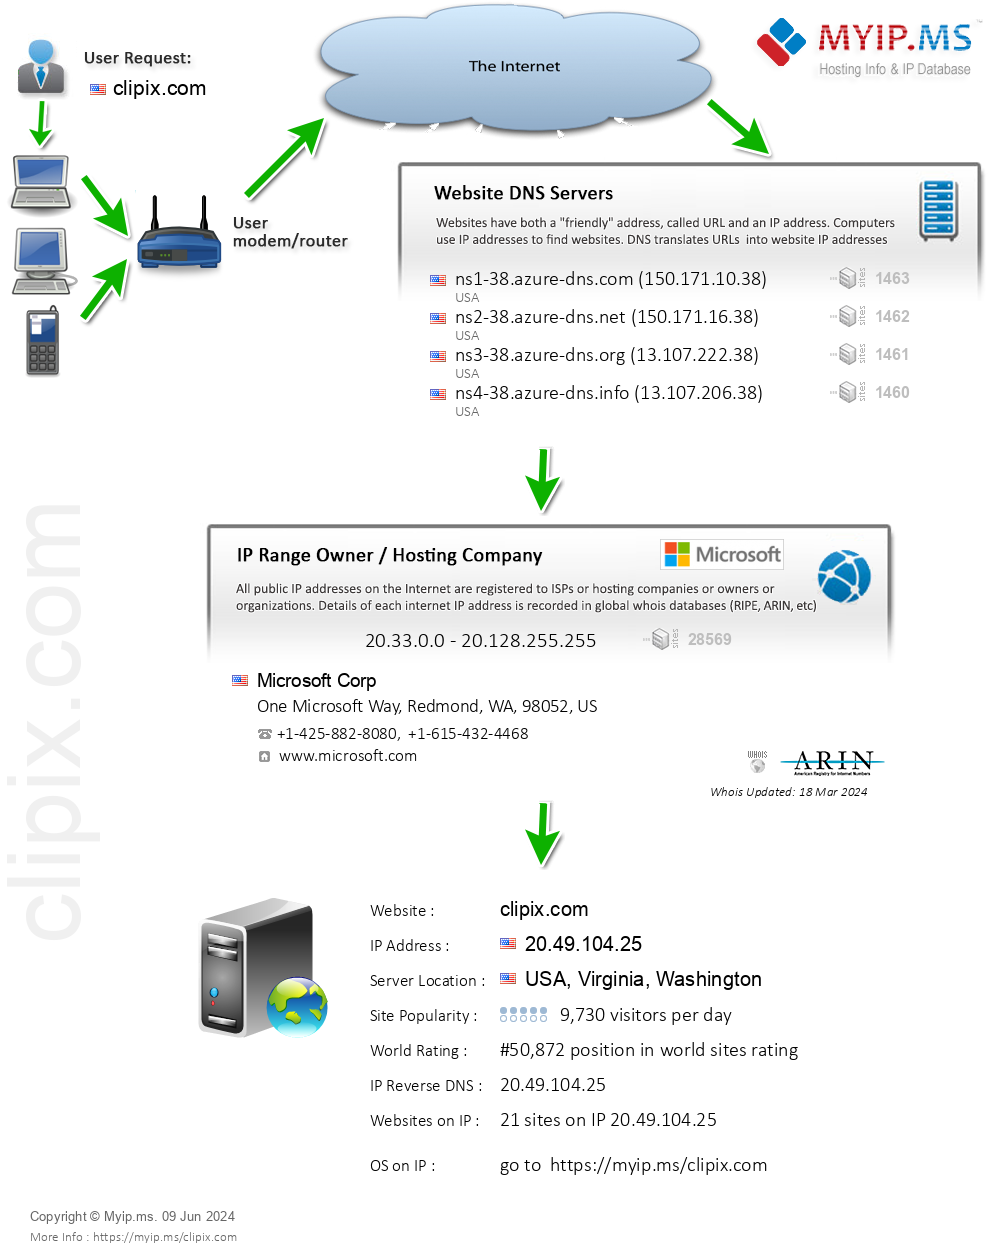 Clipix.com - Website Hosting Visual IP Diagram